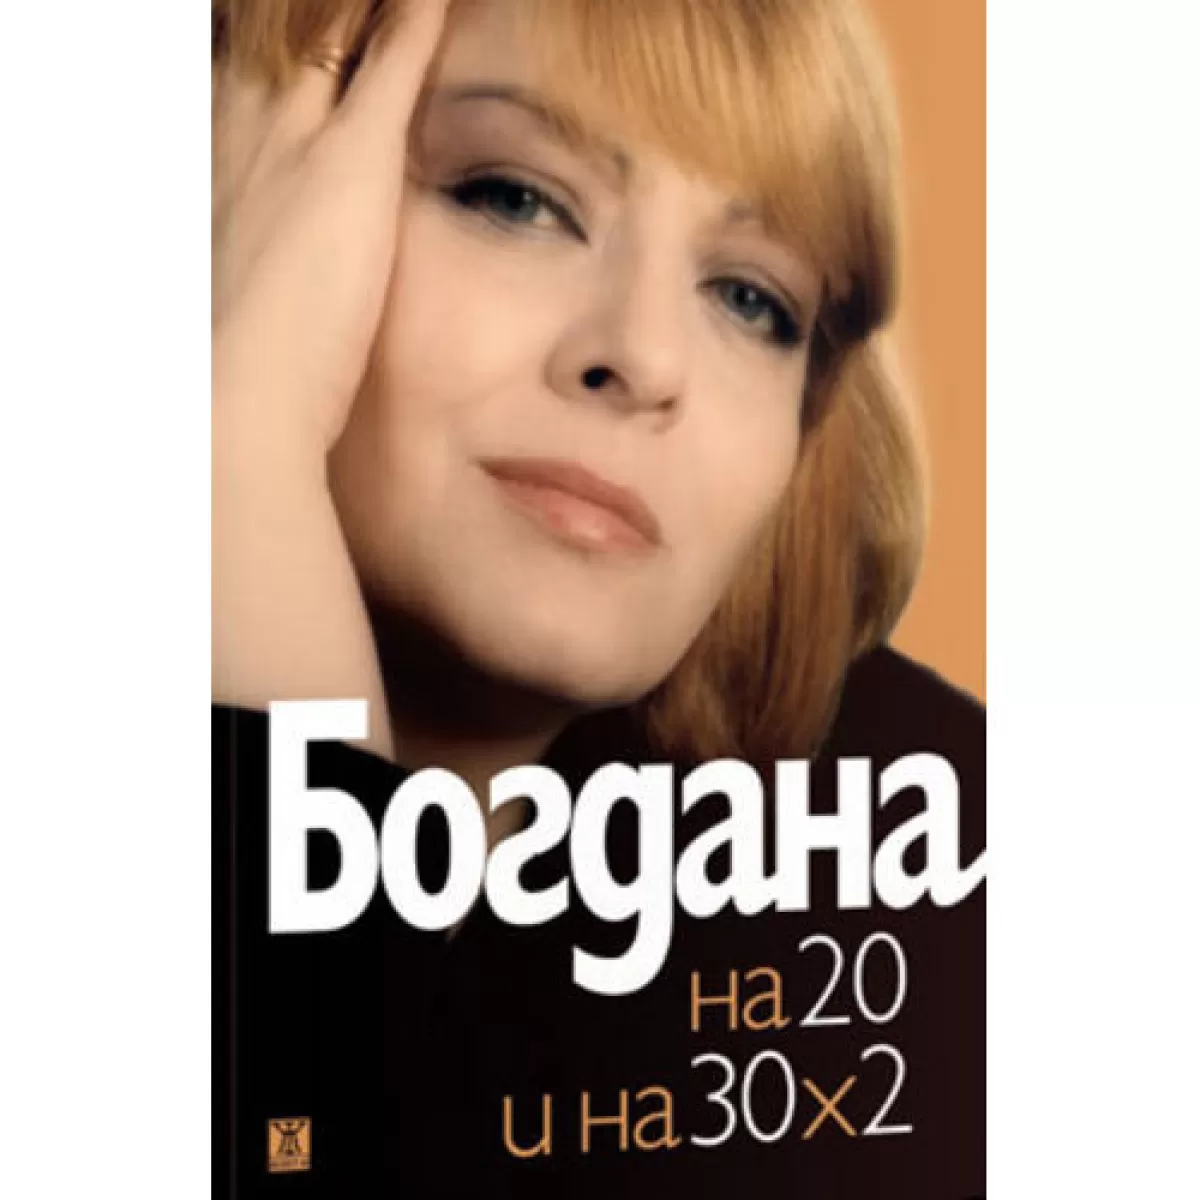 Богдана Карадочева и на 20, и на 30 х 2